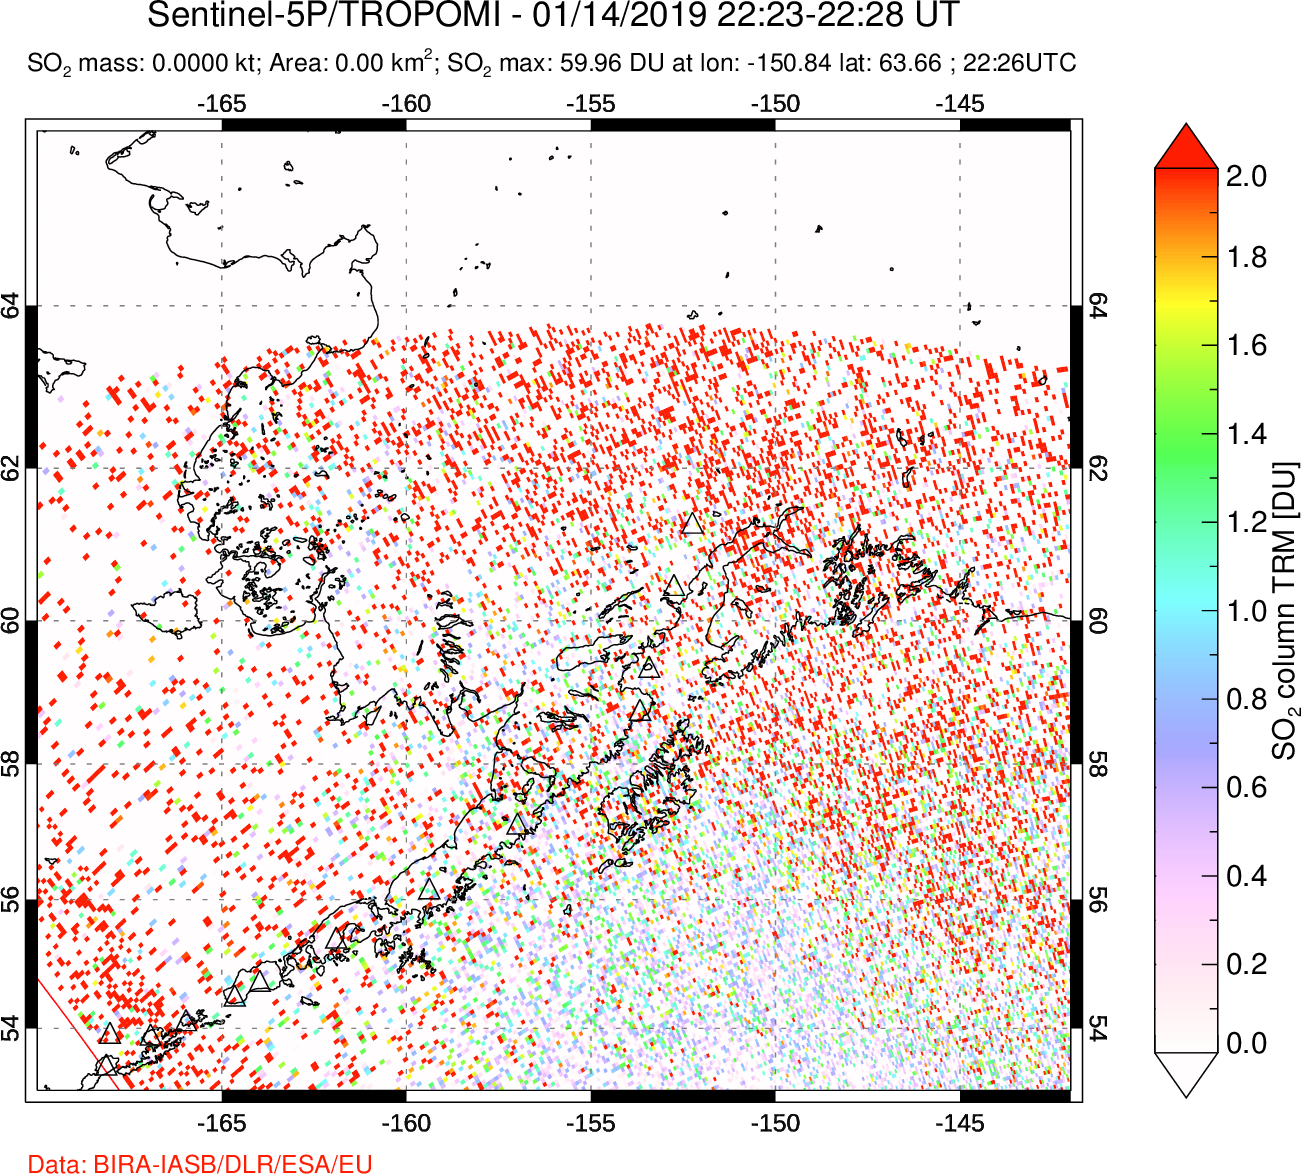 A sulfur dioxide image over Alaska, USA on Jan 14, 2019.